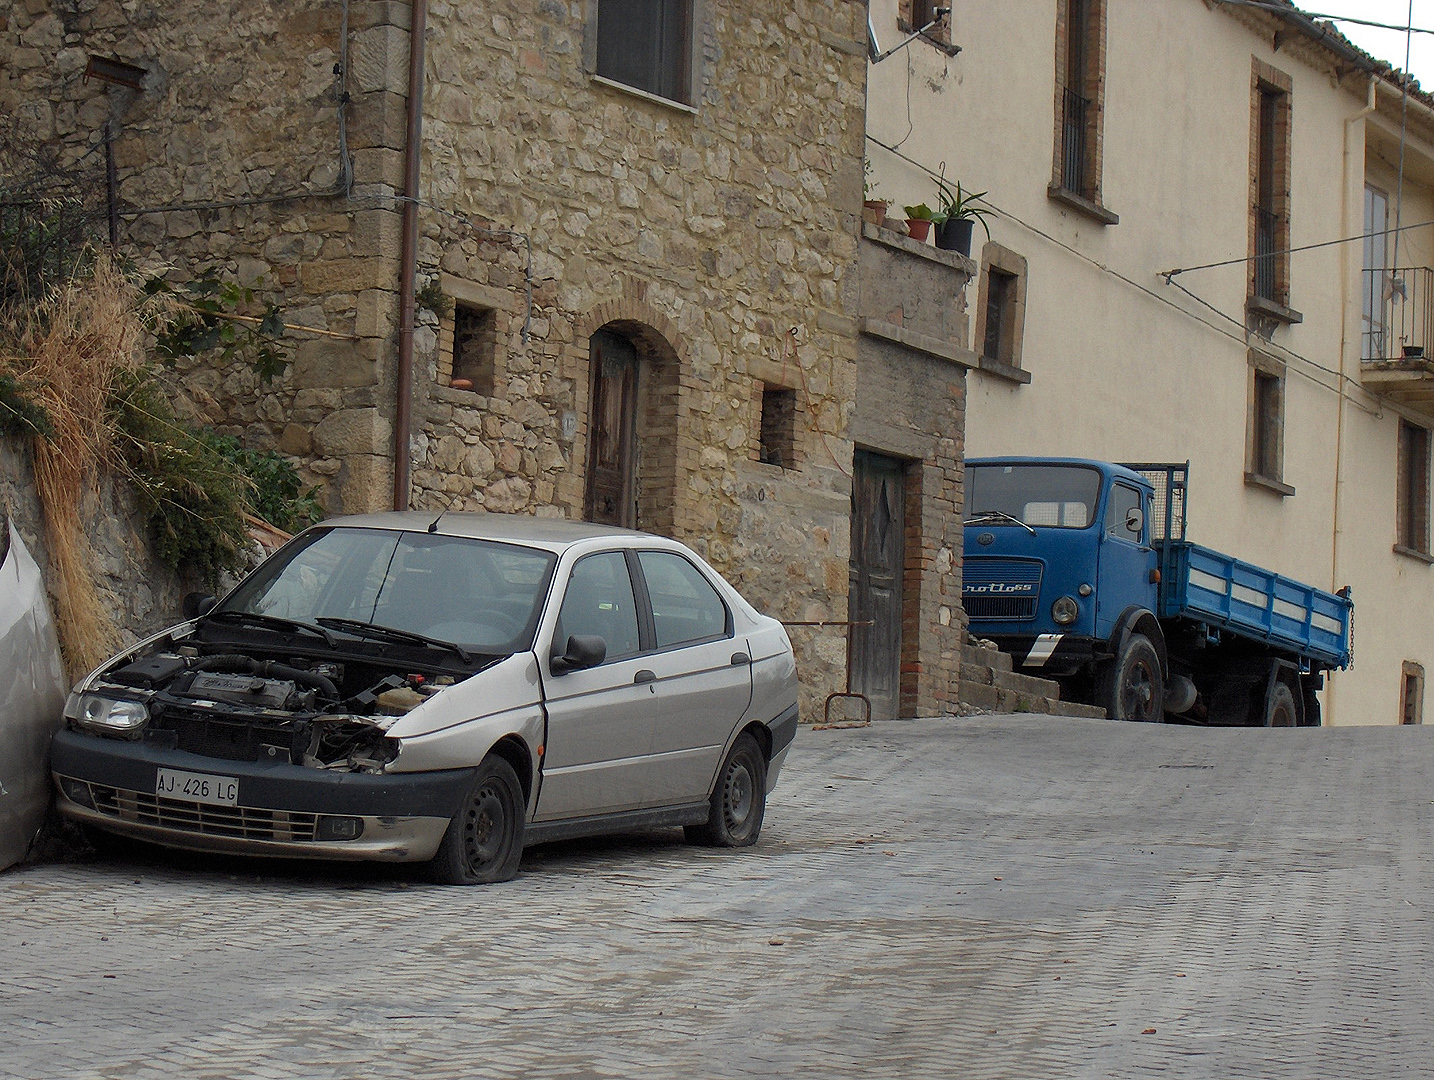 Autowrak in Carunchio (Abruzzen, Itali), Car wreck in Carunchio (Abruzzo, Italy)